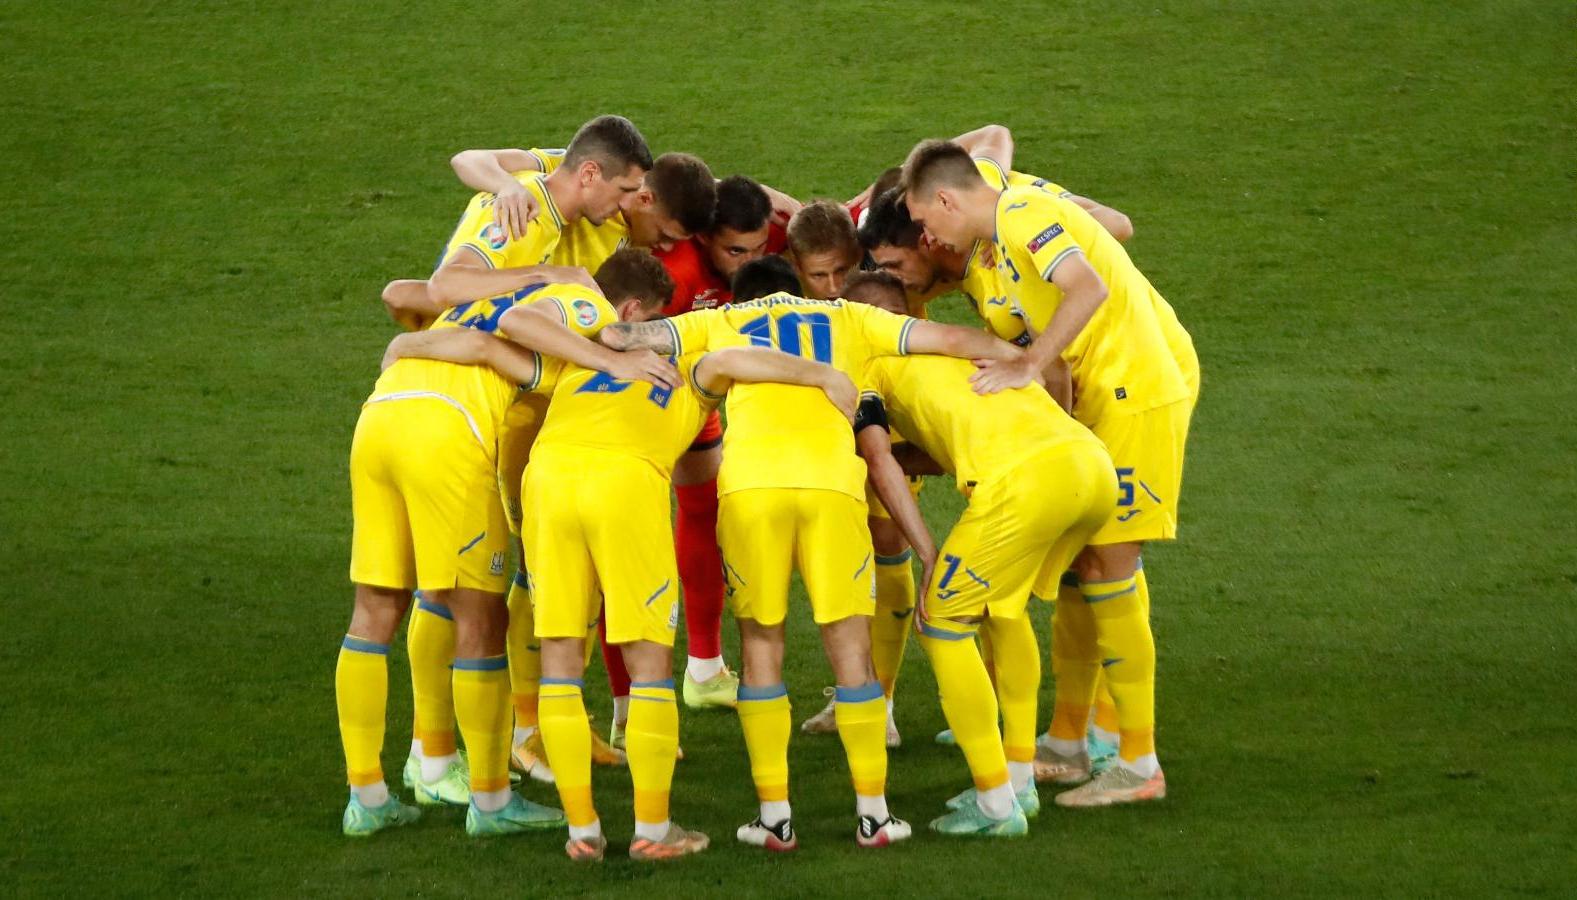 Ukrajinska fudbalska reprezentacija igra prijateljsku utakmicu protiv Borusije Menhengladbah